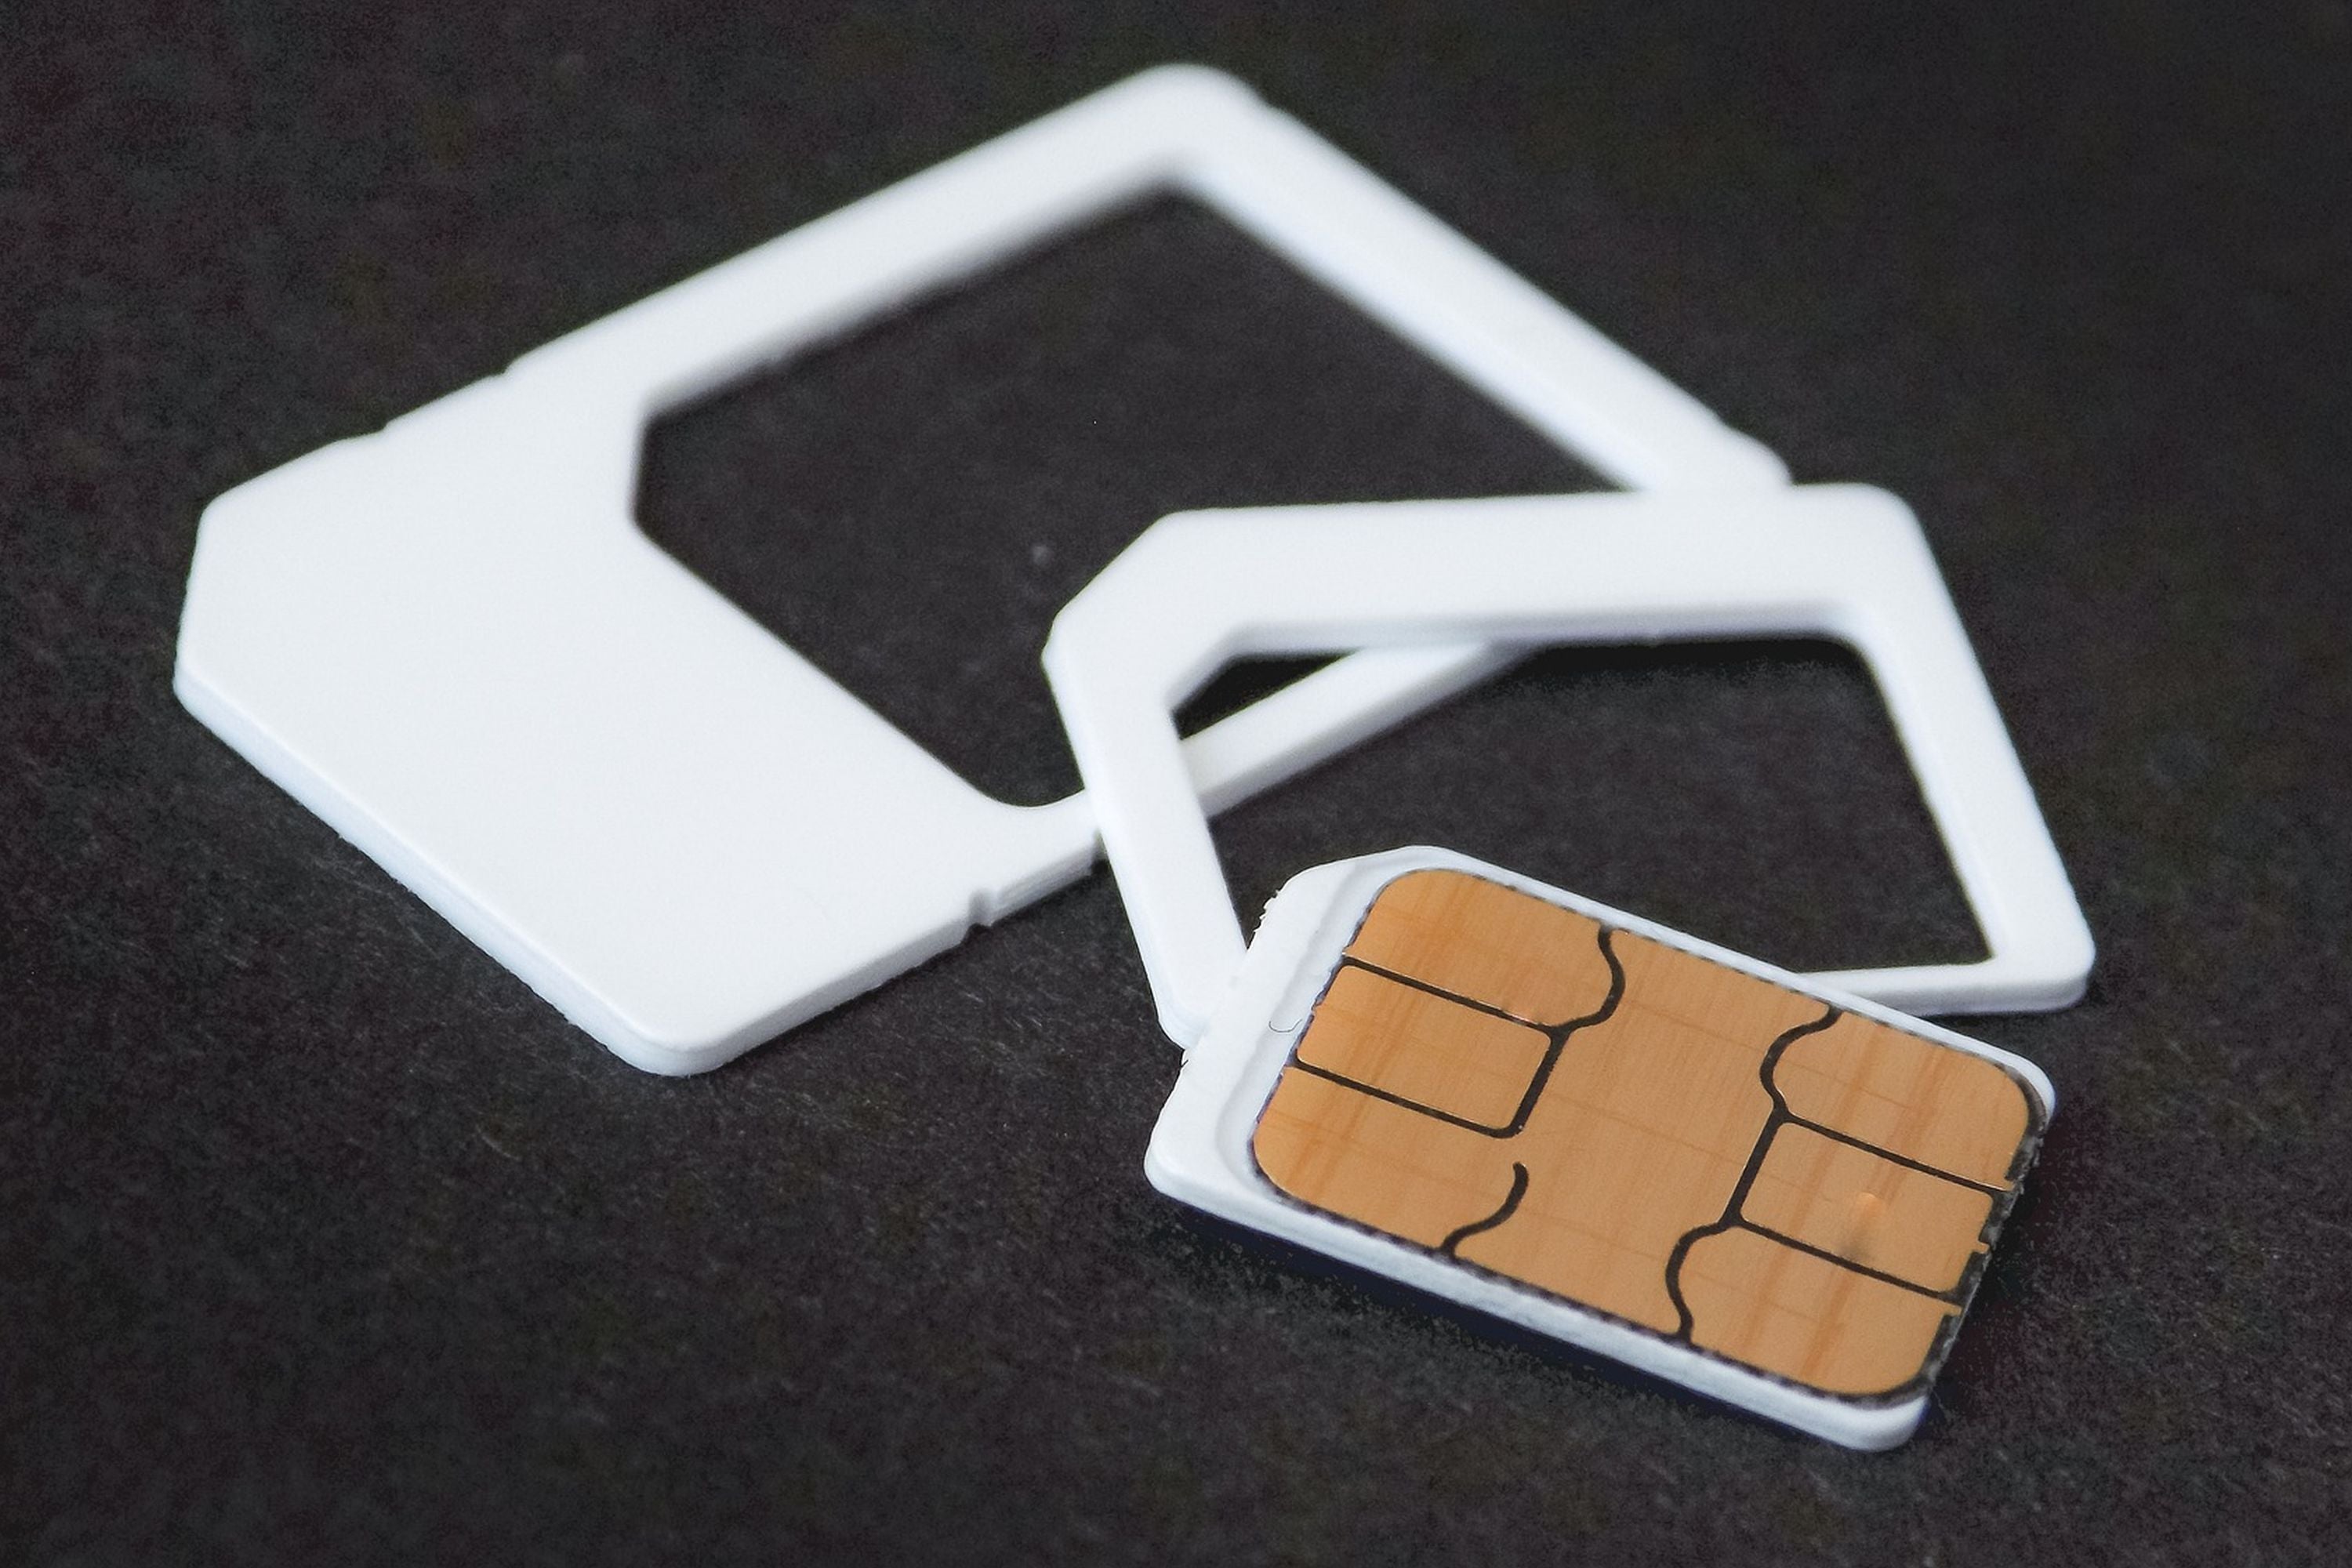 #SIM-Karte zu groß für neues Handy – was nun?